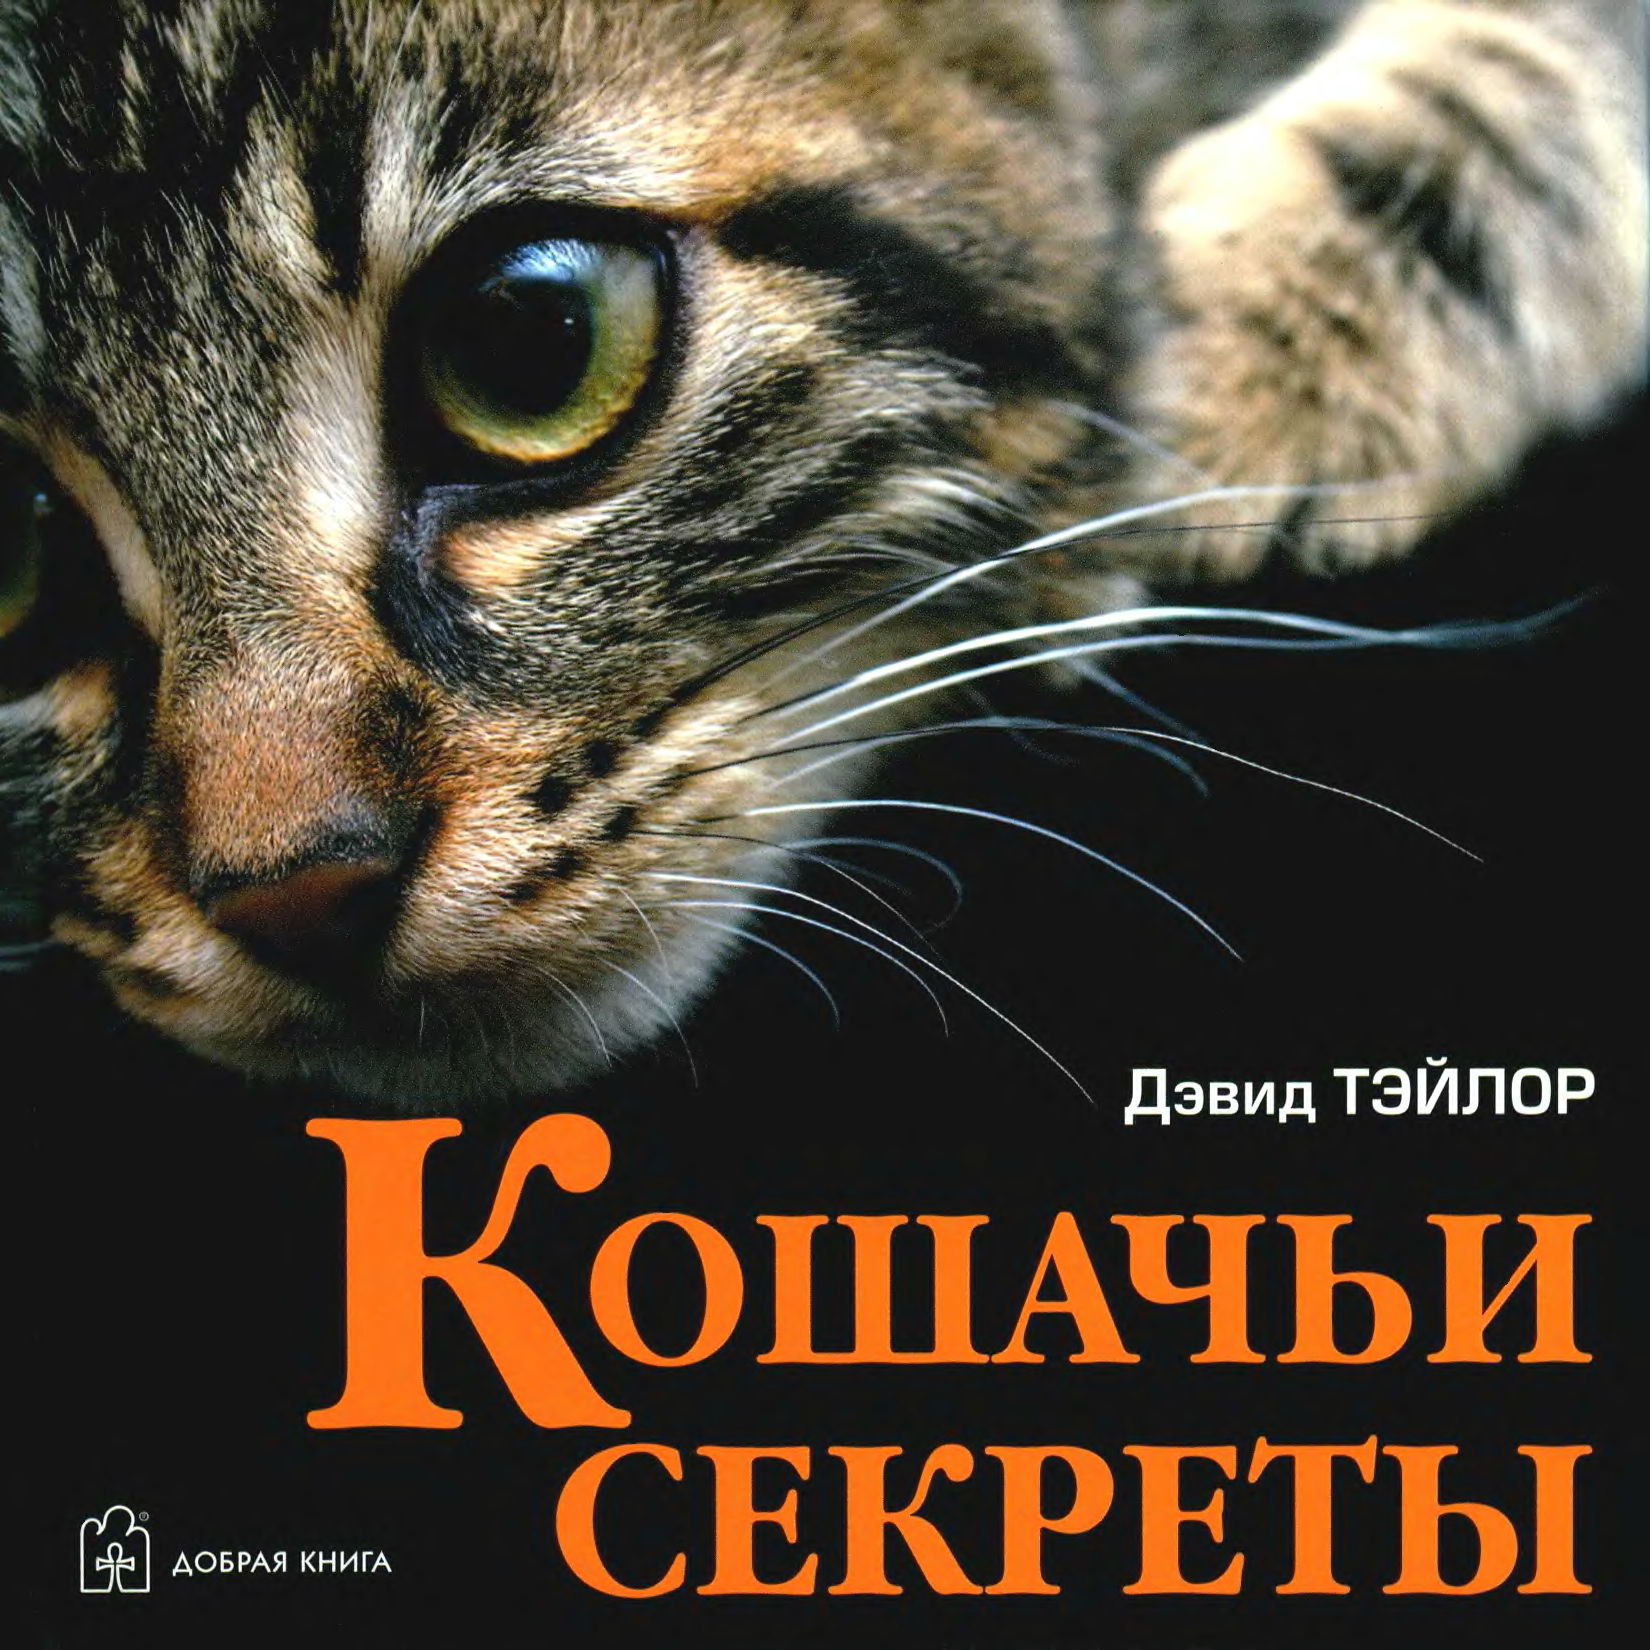 Секрет кота. Книги о котах. Книги про кошек. Книга кошачьи секреты. Книги о кошках Художественные.